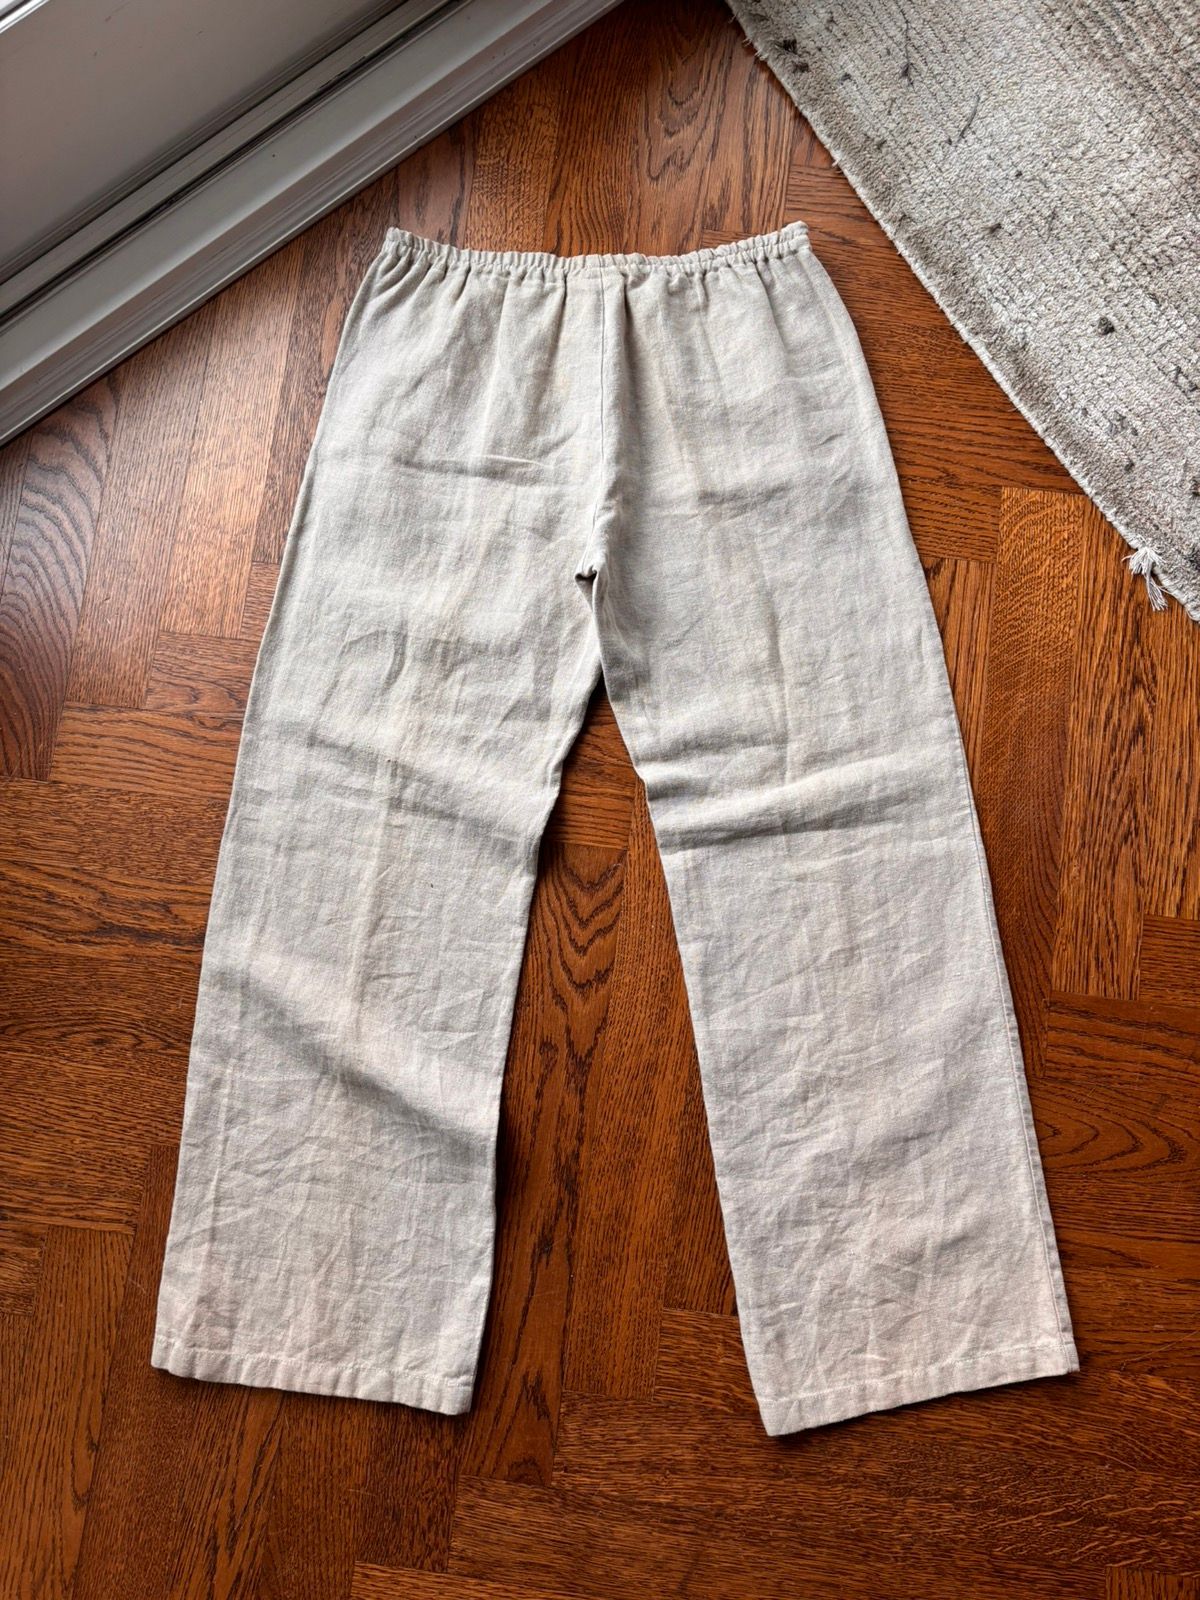 Vintage Vintage GAP Linen Pants 90s 2000s Loose Medium Elastic White Size 32" / US 10 / IT 46 - 2 Preview